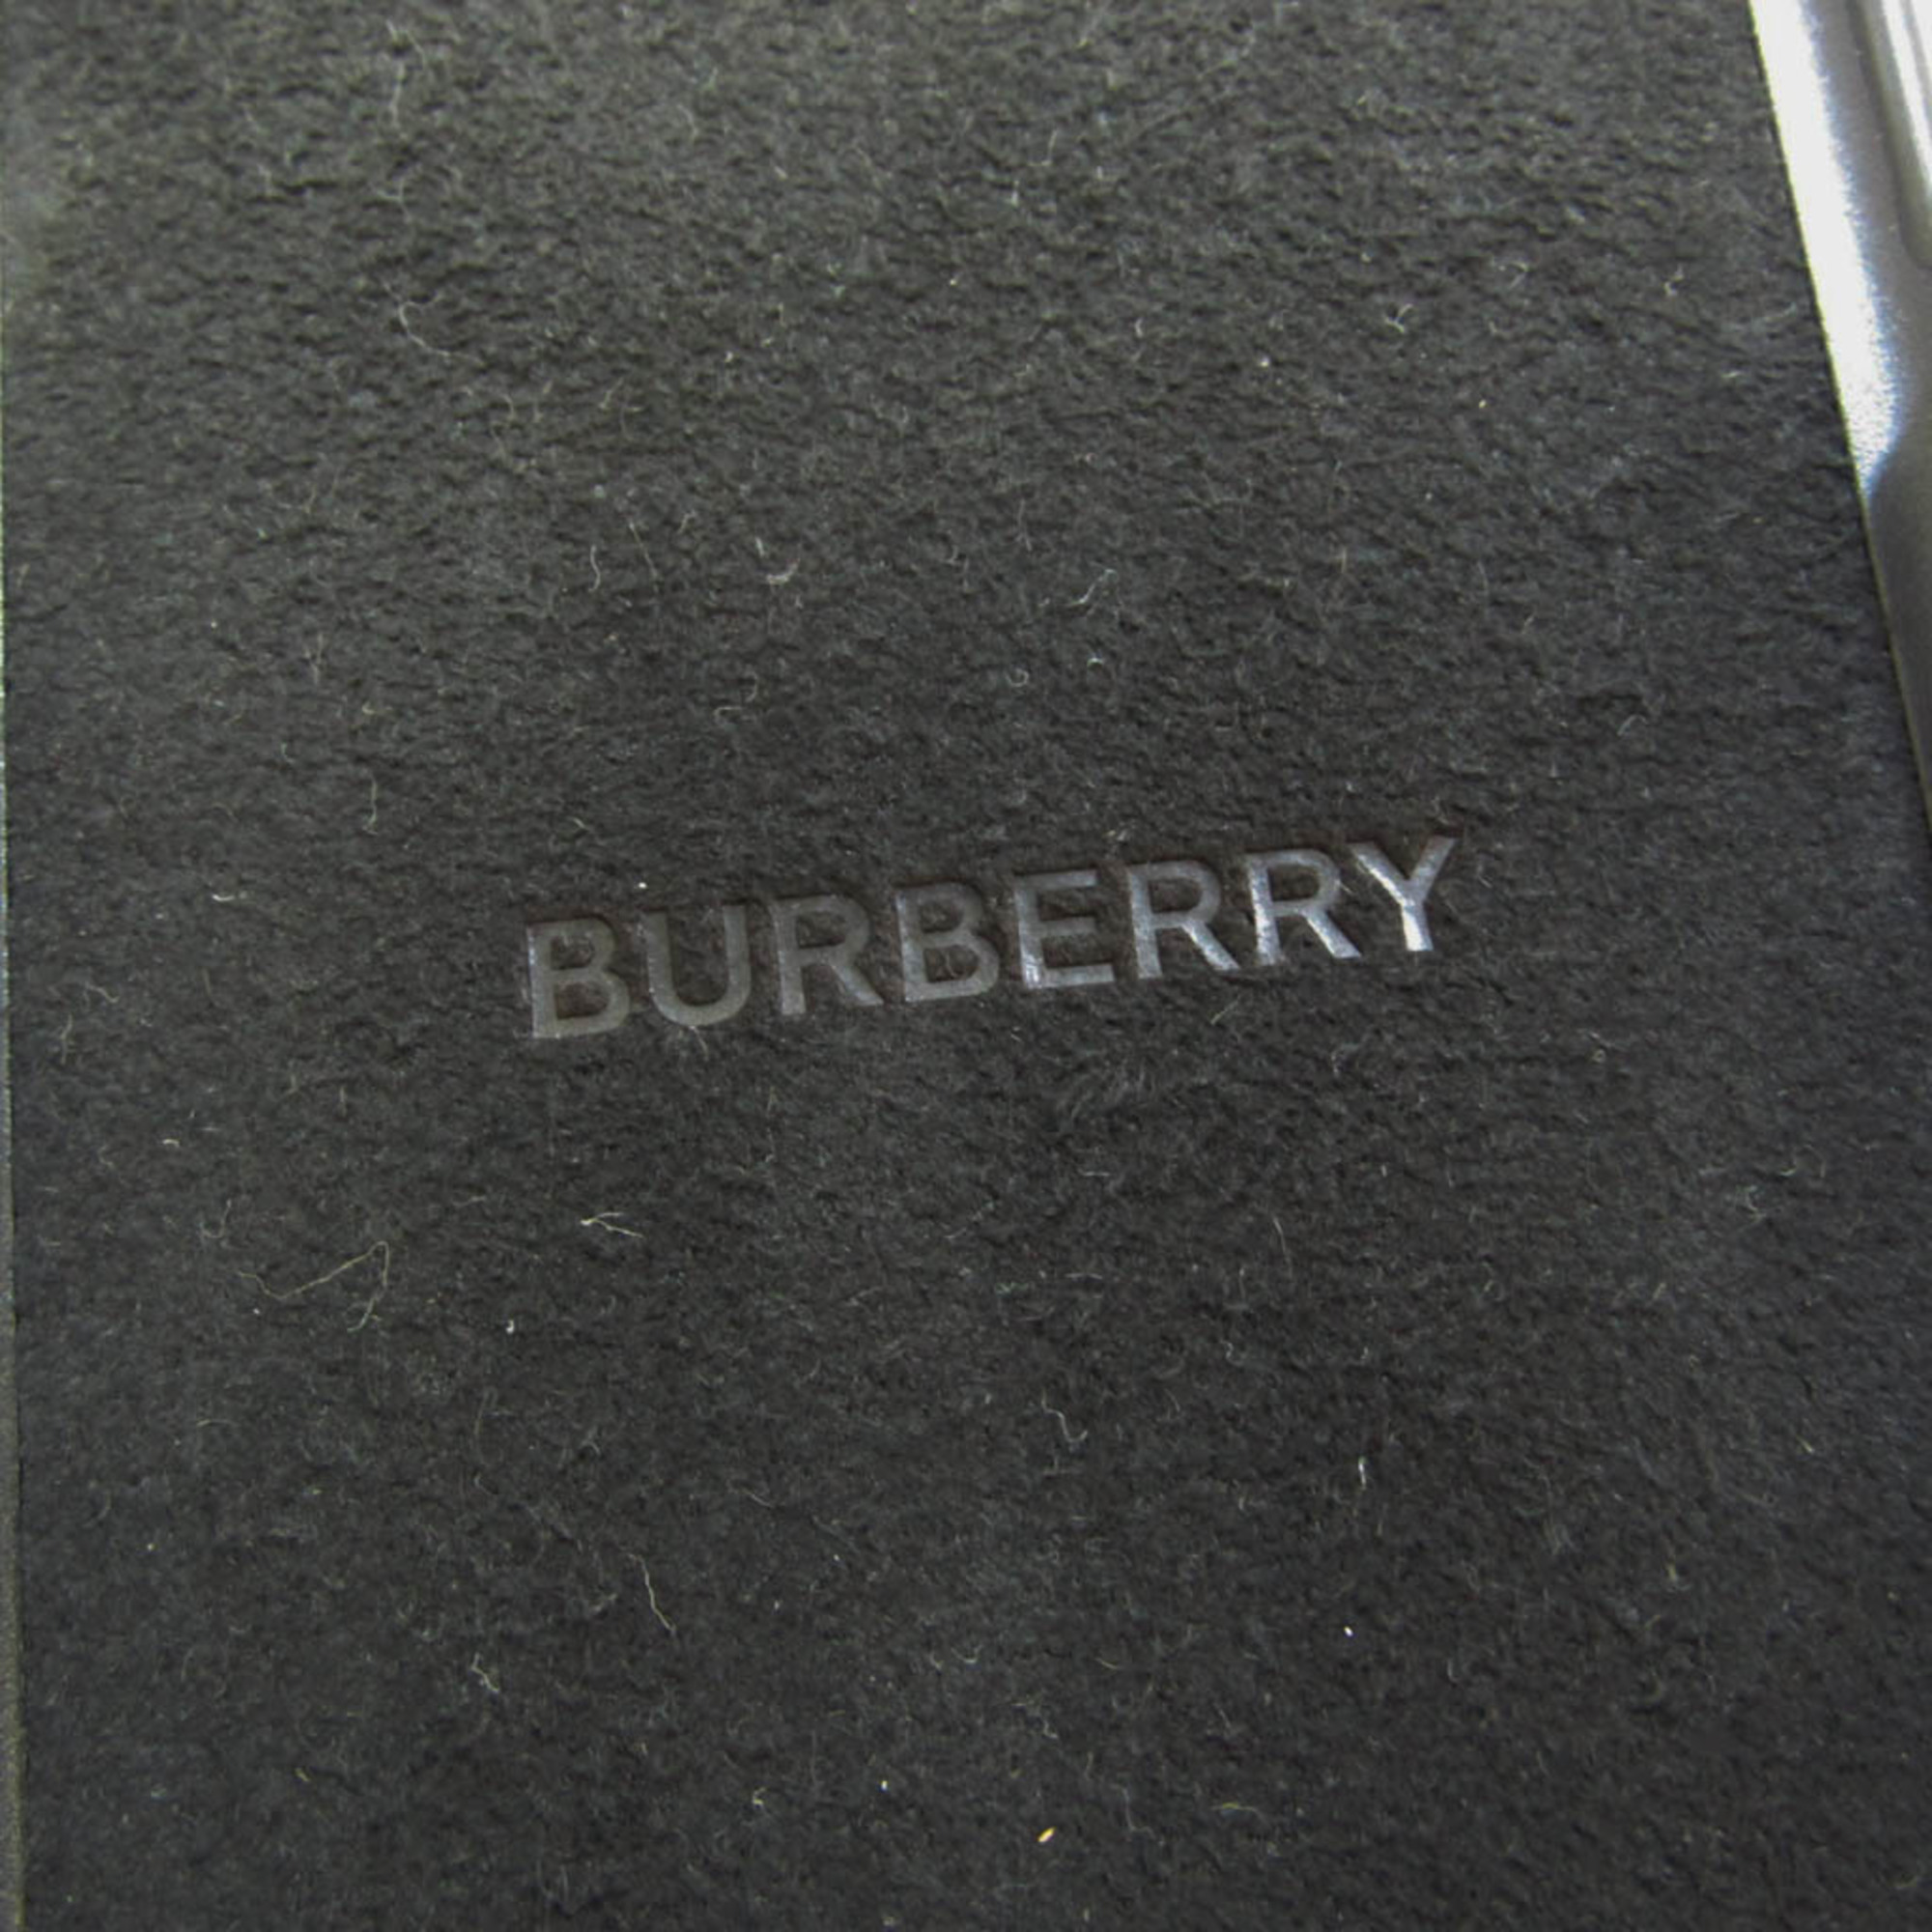 バーバリー(Burberry) ナイトロゴ 8021802 レザー バンパー iPhone X 対応 ブラック